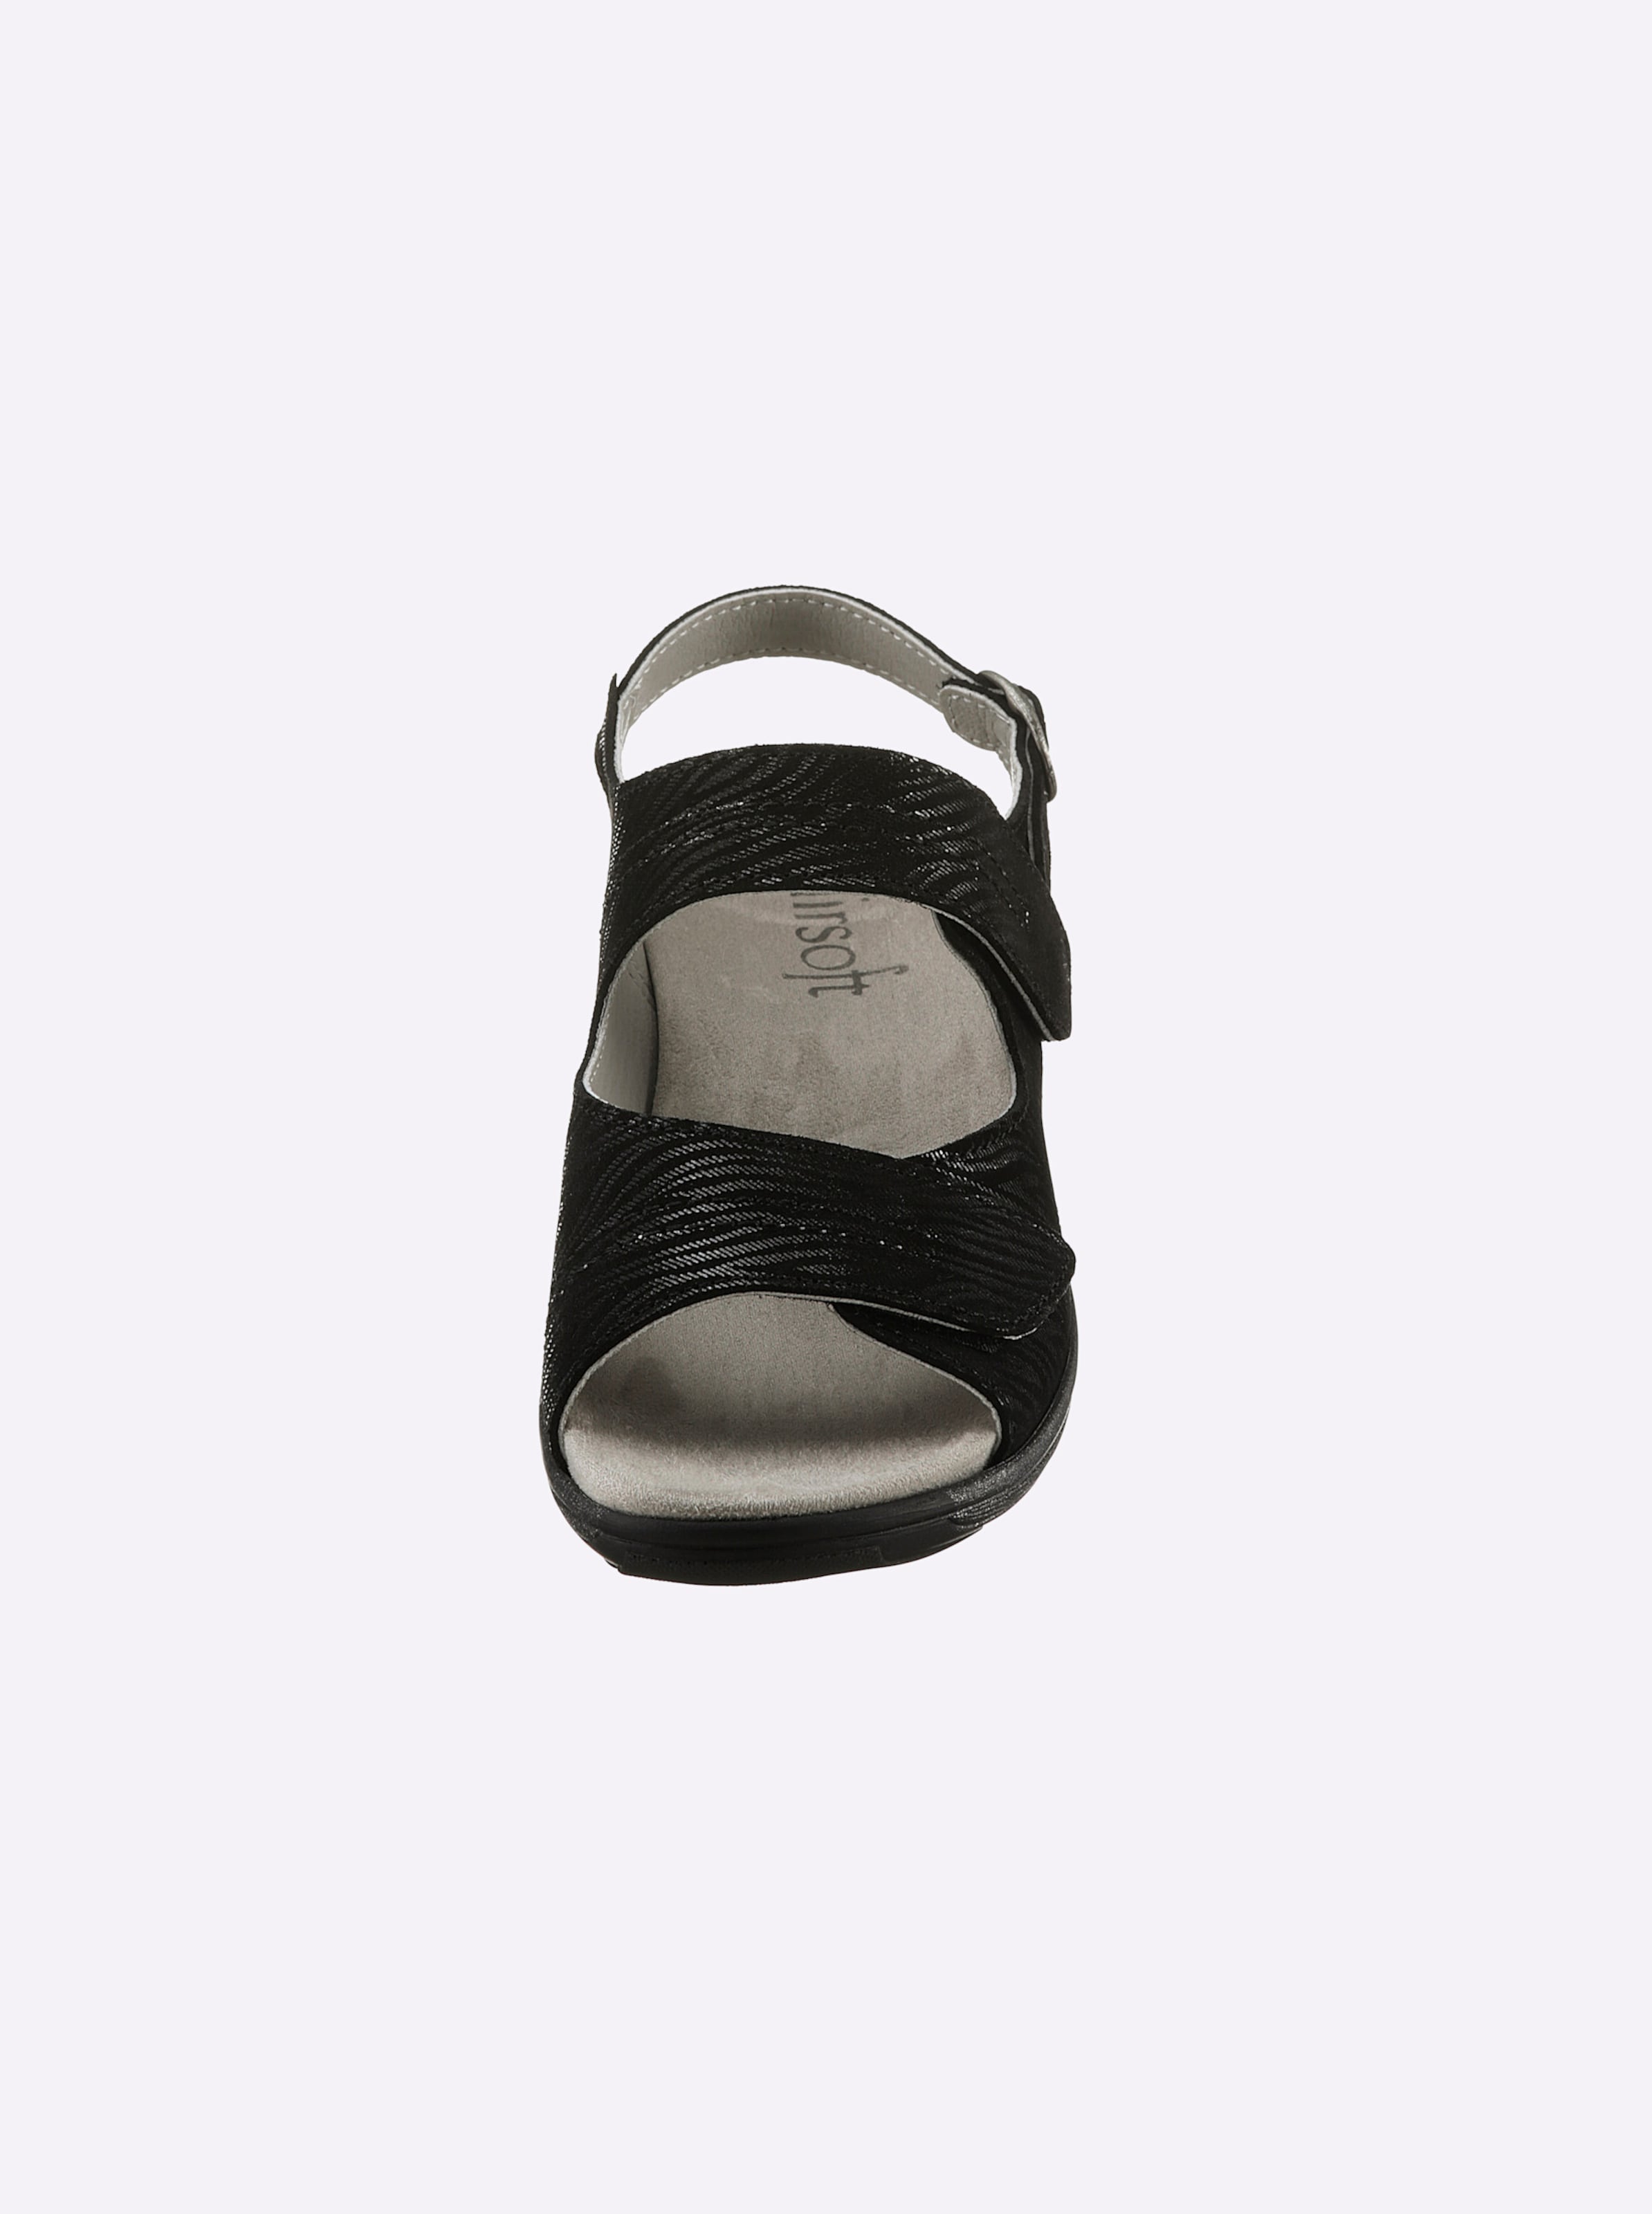 Hochwertige Leder günstig Kaufen-Sandalette in schwarz von airsoft comfort+. Sandalette in schwarz von airsoft comfort+ <![CDATA[Ganz im Trend und auch noch super bequem! Sandalette von airsoft comfort+ mit geprägtem, edel schimmerndem Zebra-Muster auf hochwertigem Glattleder. Innen aus